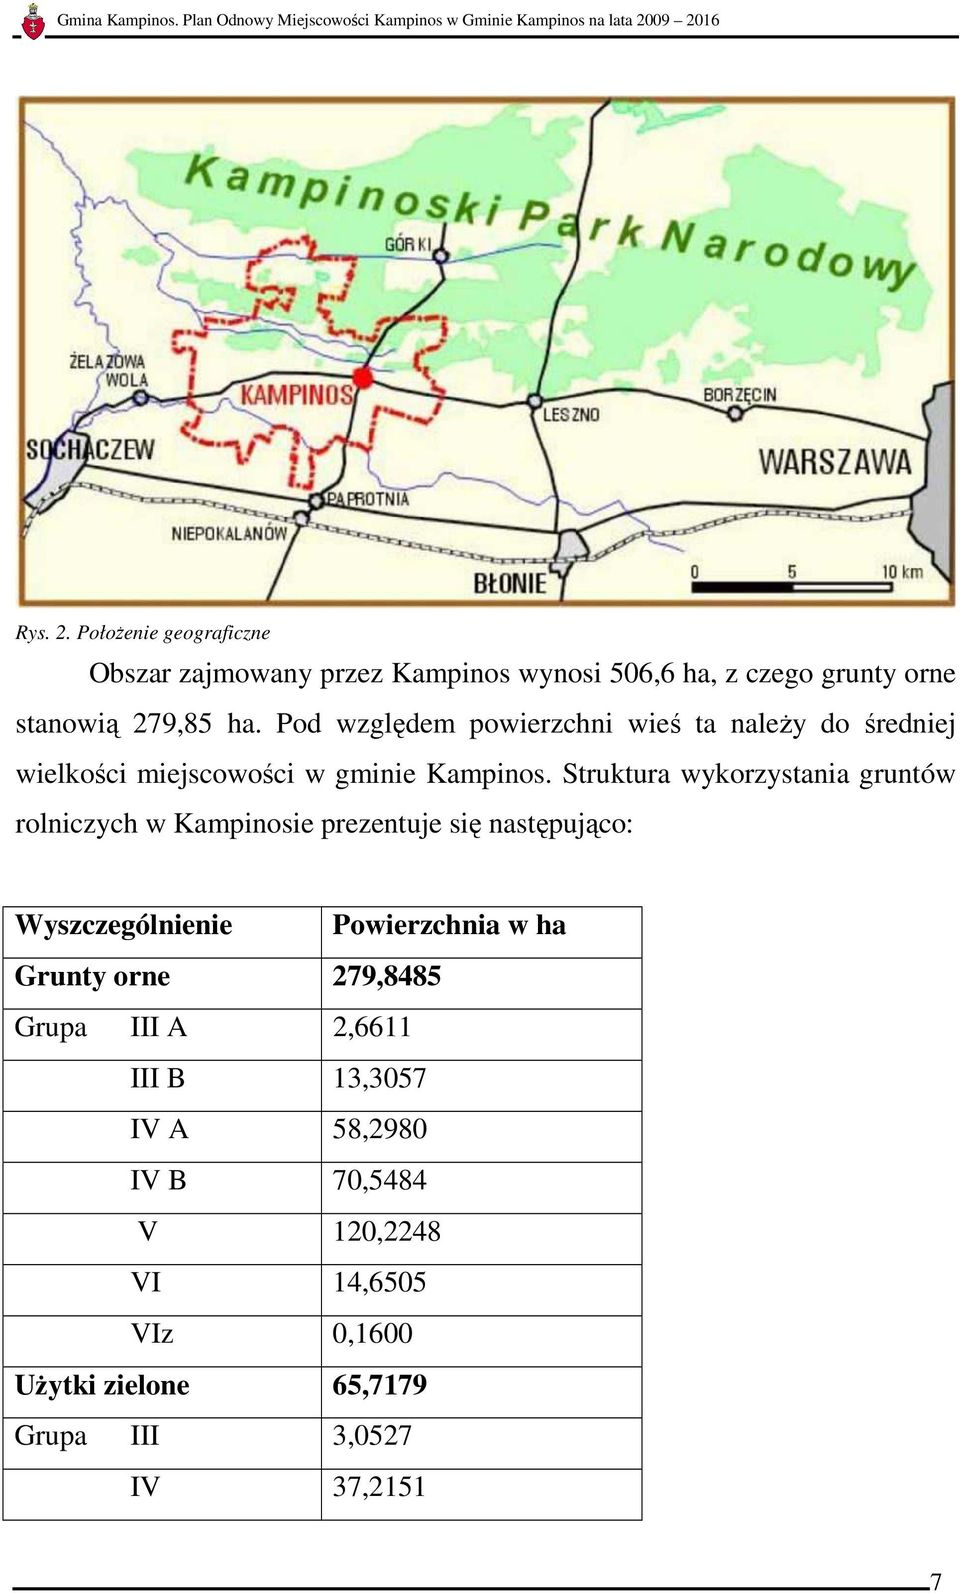 Struktura wykorzystania gruntów rolniczych w Kampinosie prezentuje się następująco: Wyszczególnienie Powierzchnia w ha